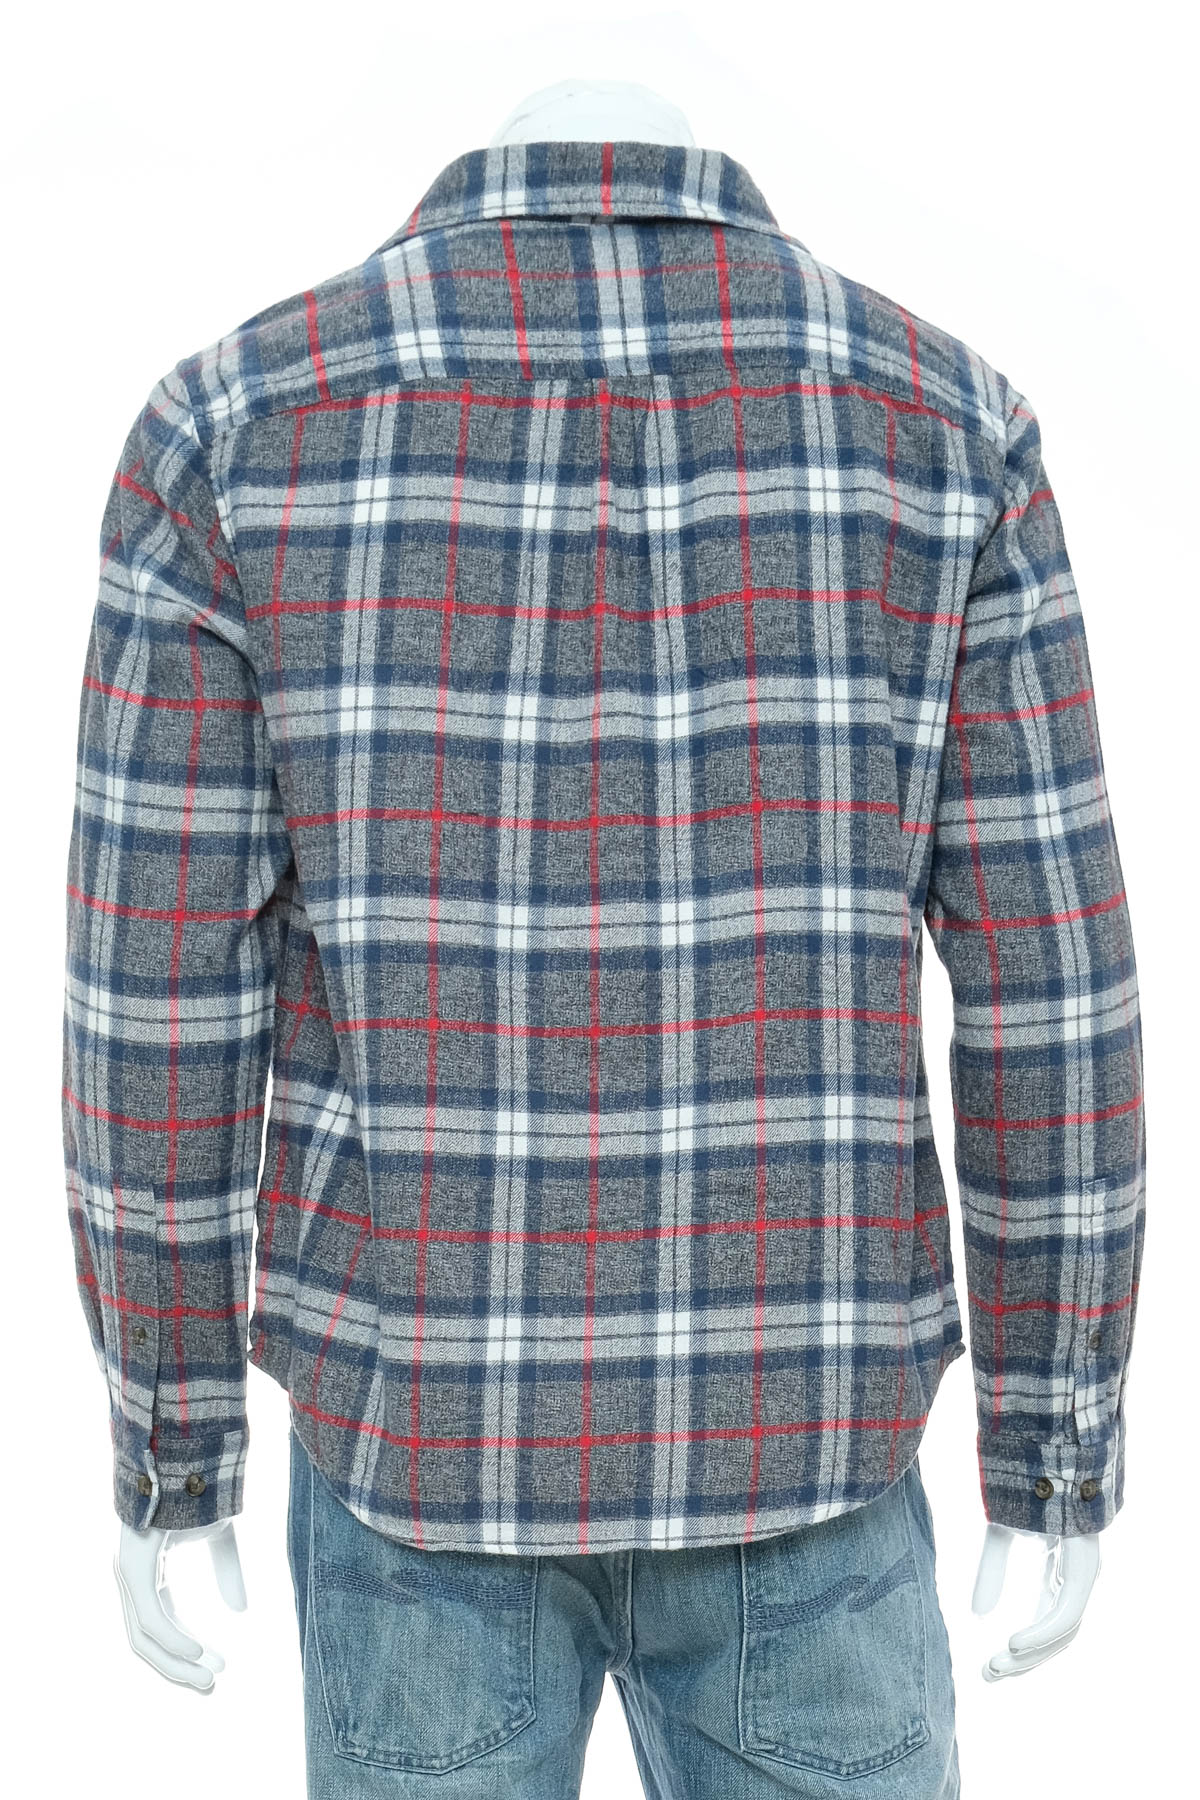 Ανδρικό πουκάμισο - Goodiellow - 1